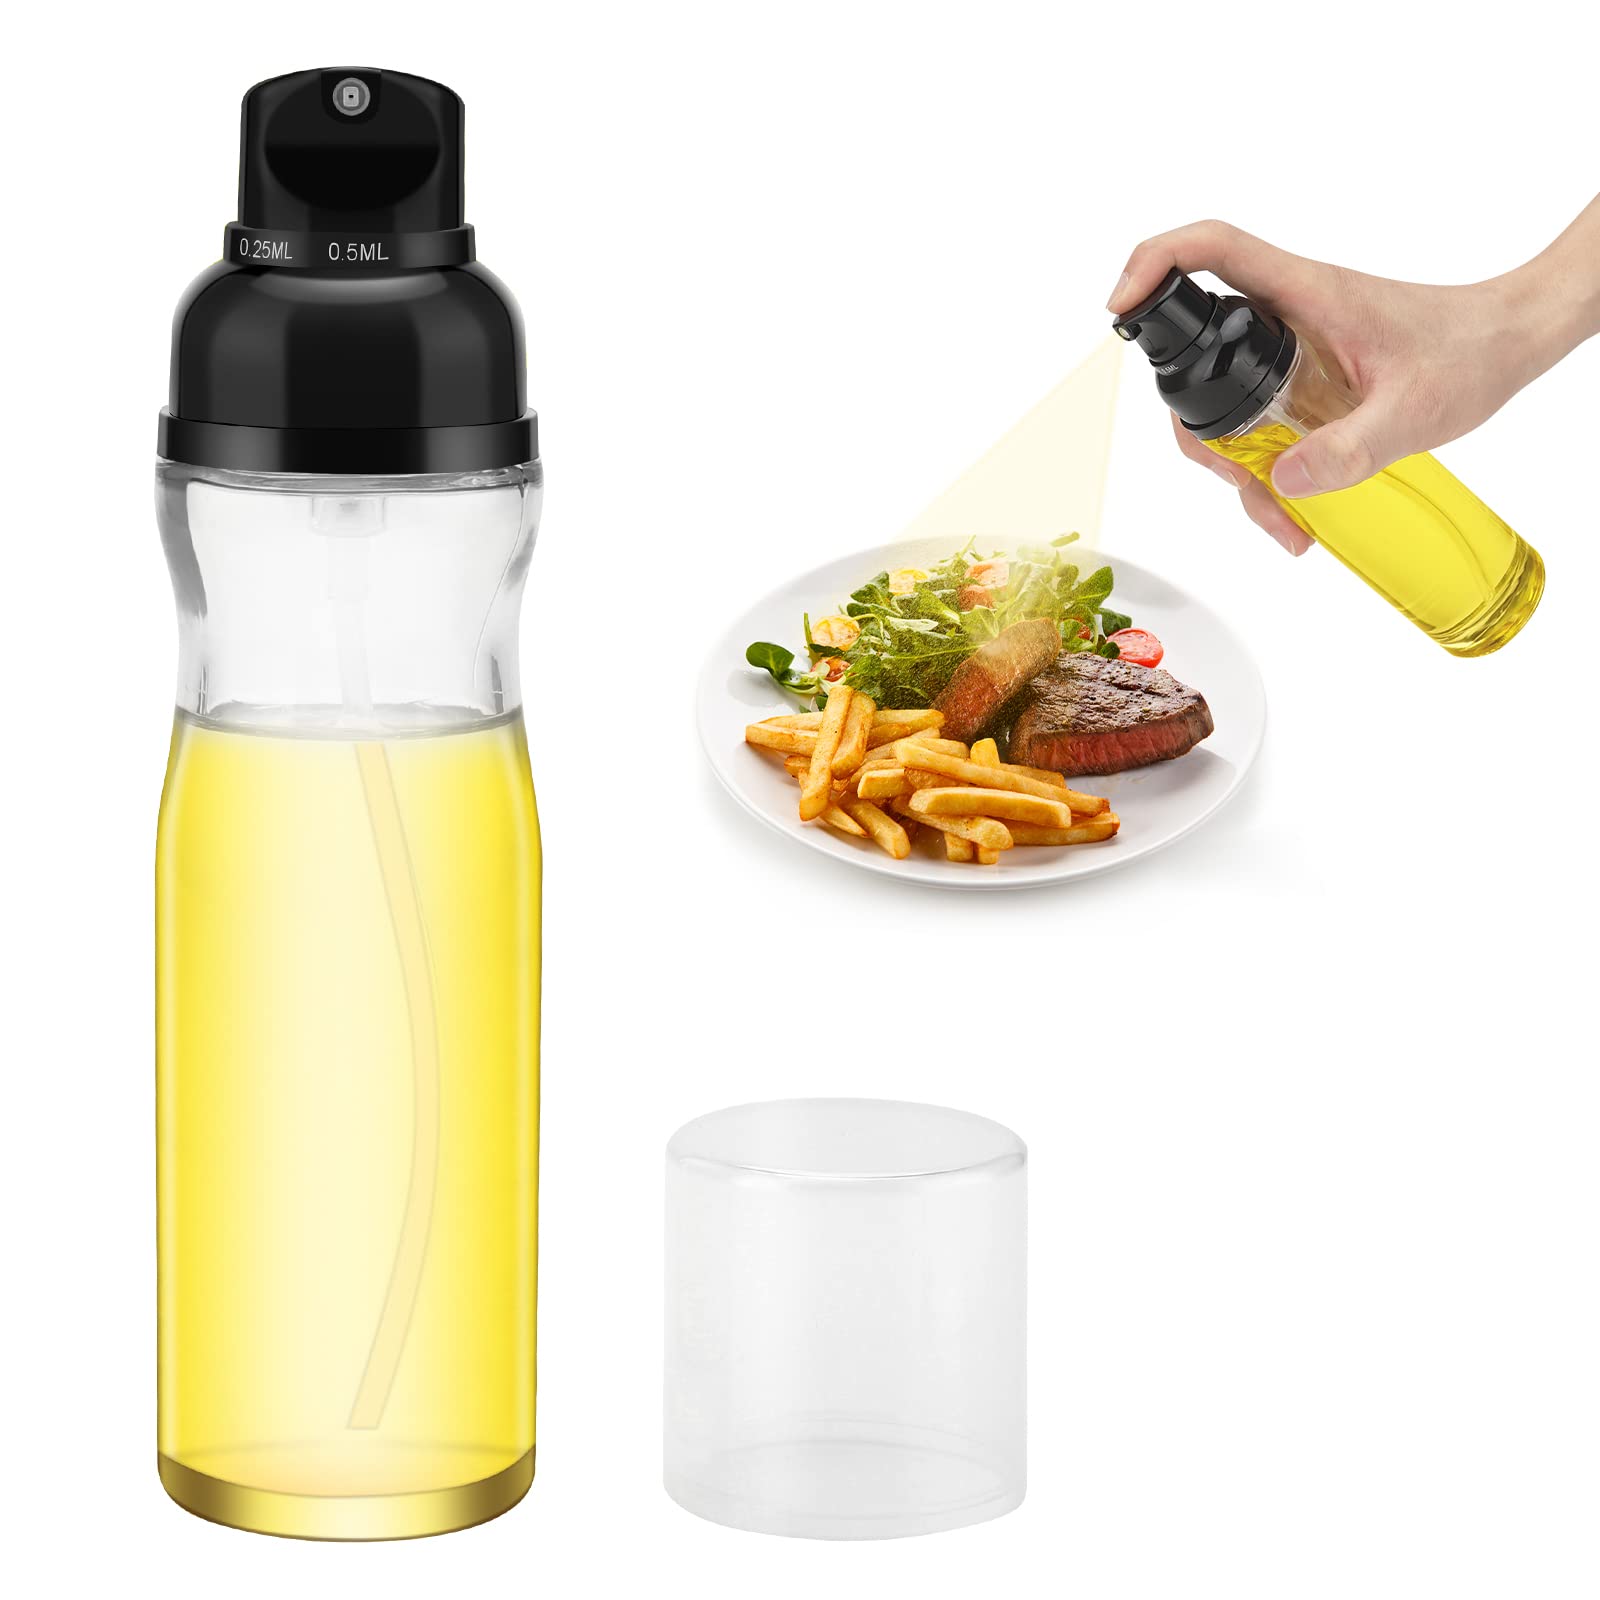 Honbuty 200ml Glass Olive Oil Sprayer for Cooking - Oil Dispenser Bottle Spray Mister - Refillable Food Grade Oil Vinegar Spritzer Spray